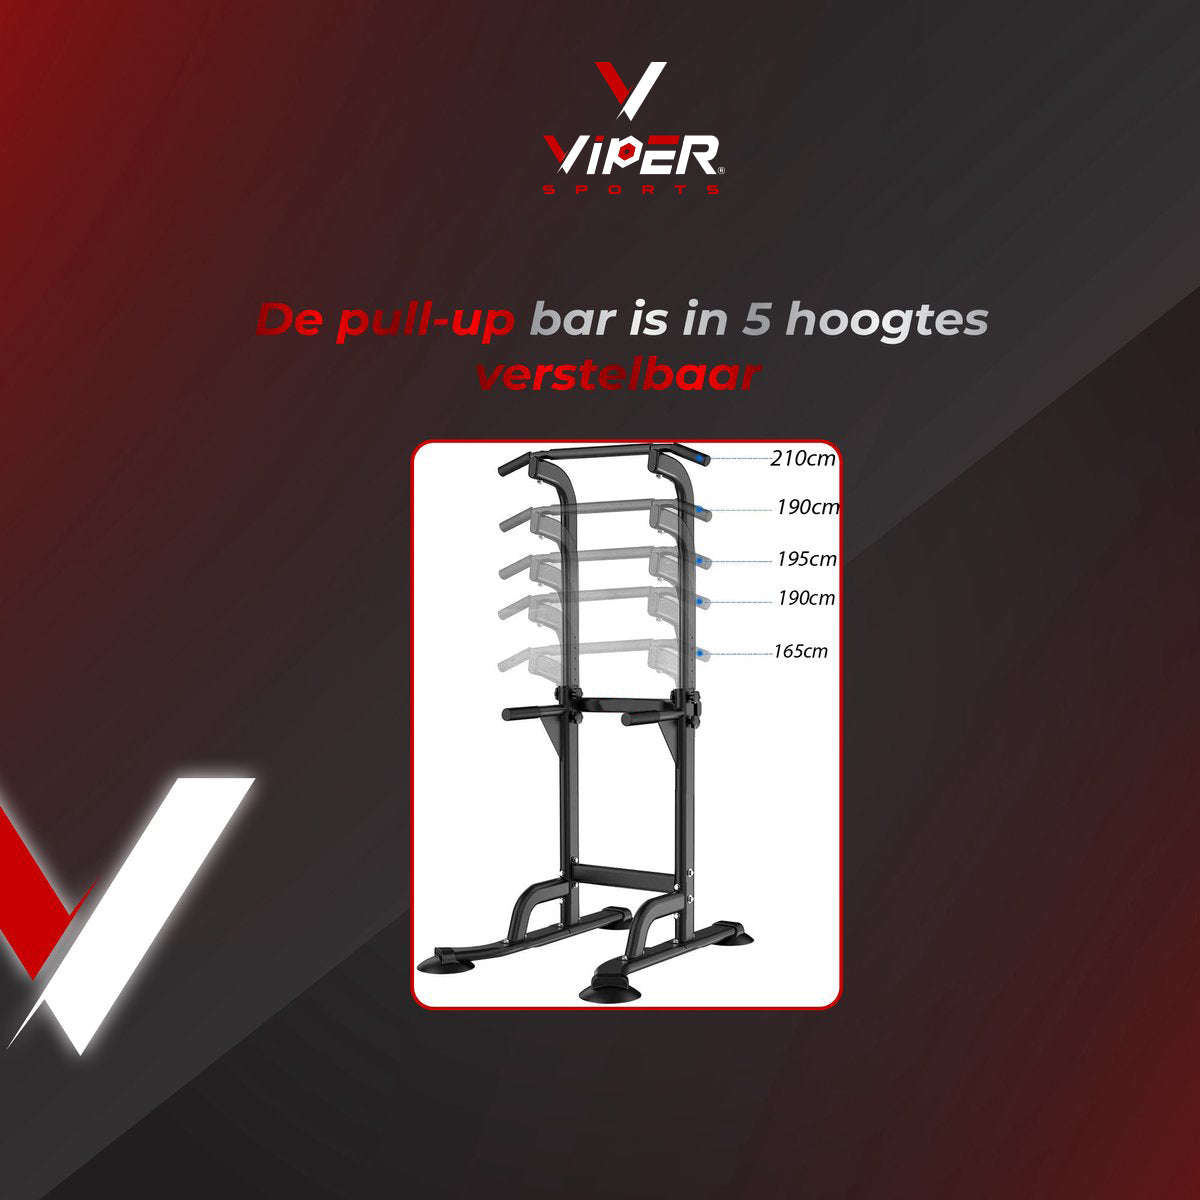 Viper Sports Krachtstation - Trainingsrek - Fitnessrek - Multifunctioneel - Power Tower Met Pull Up bar - In hoogte verstelbaar